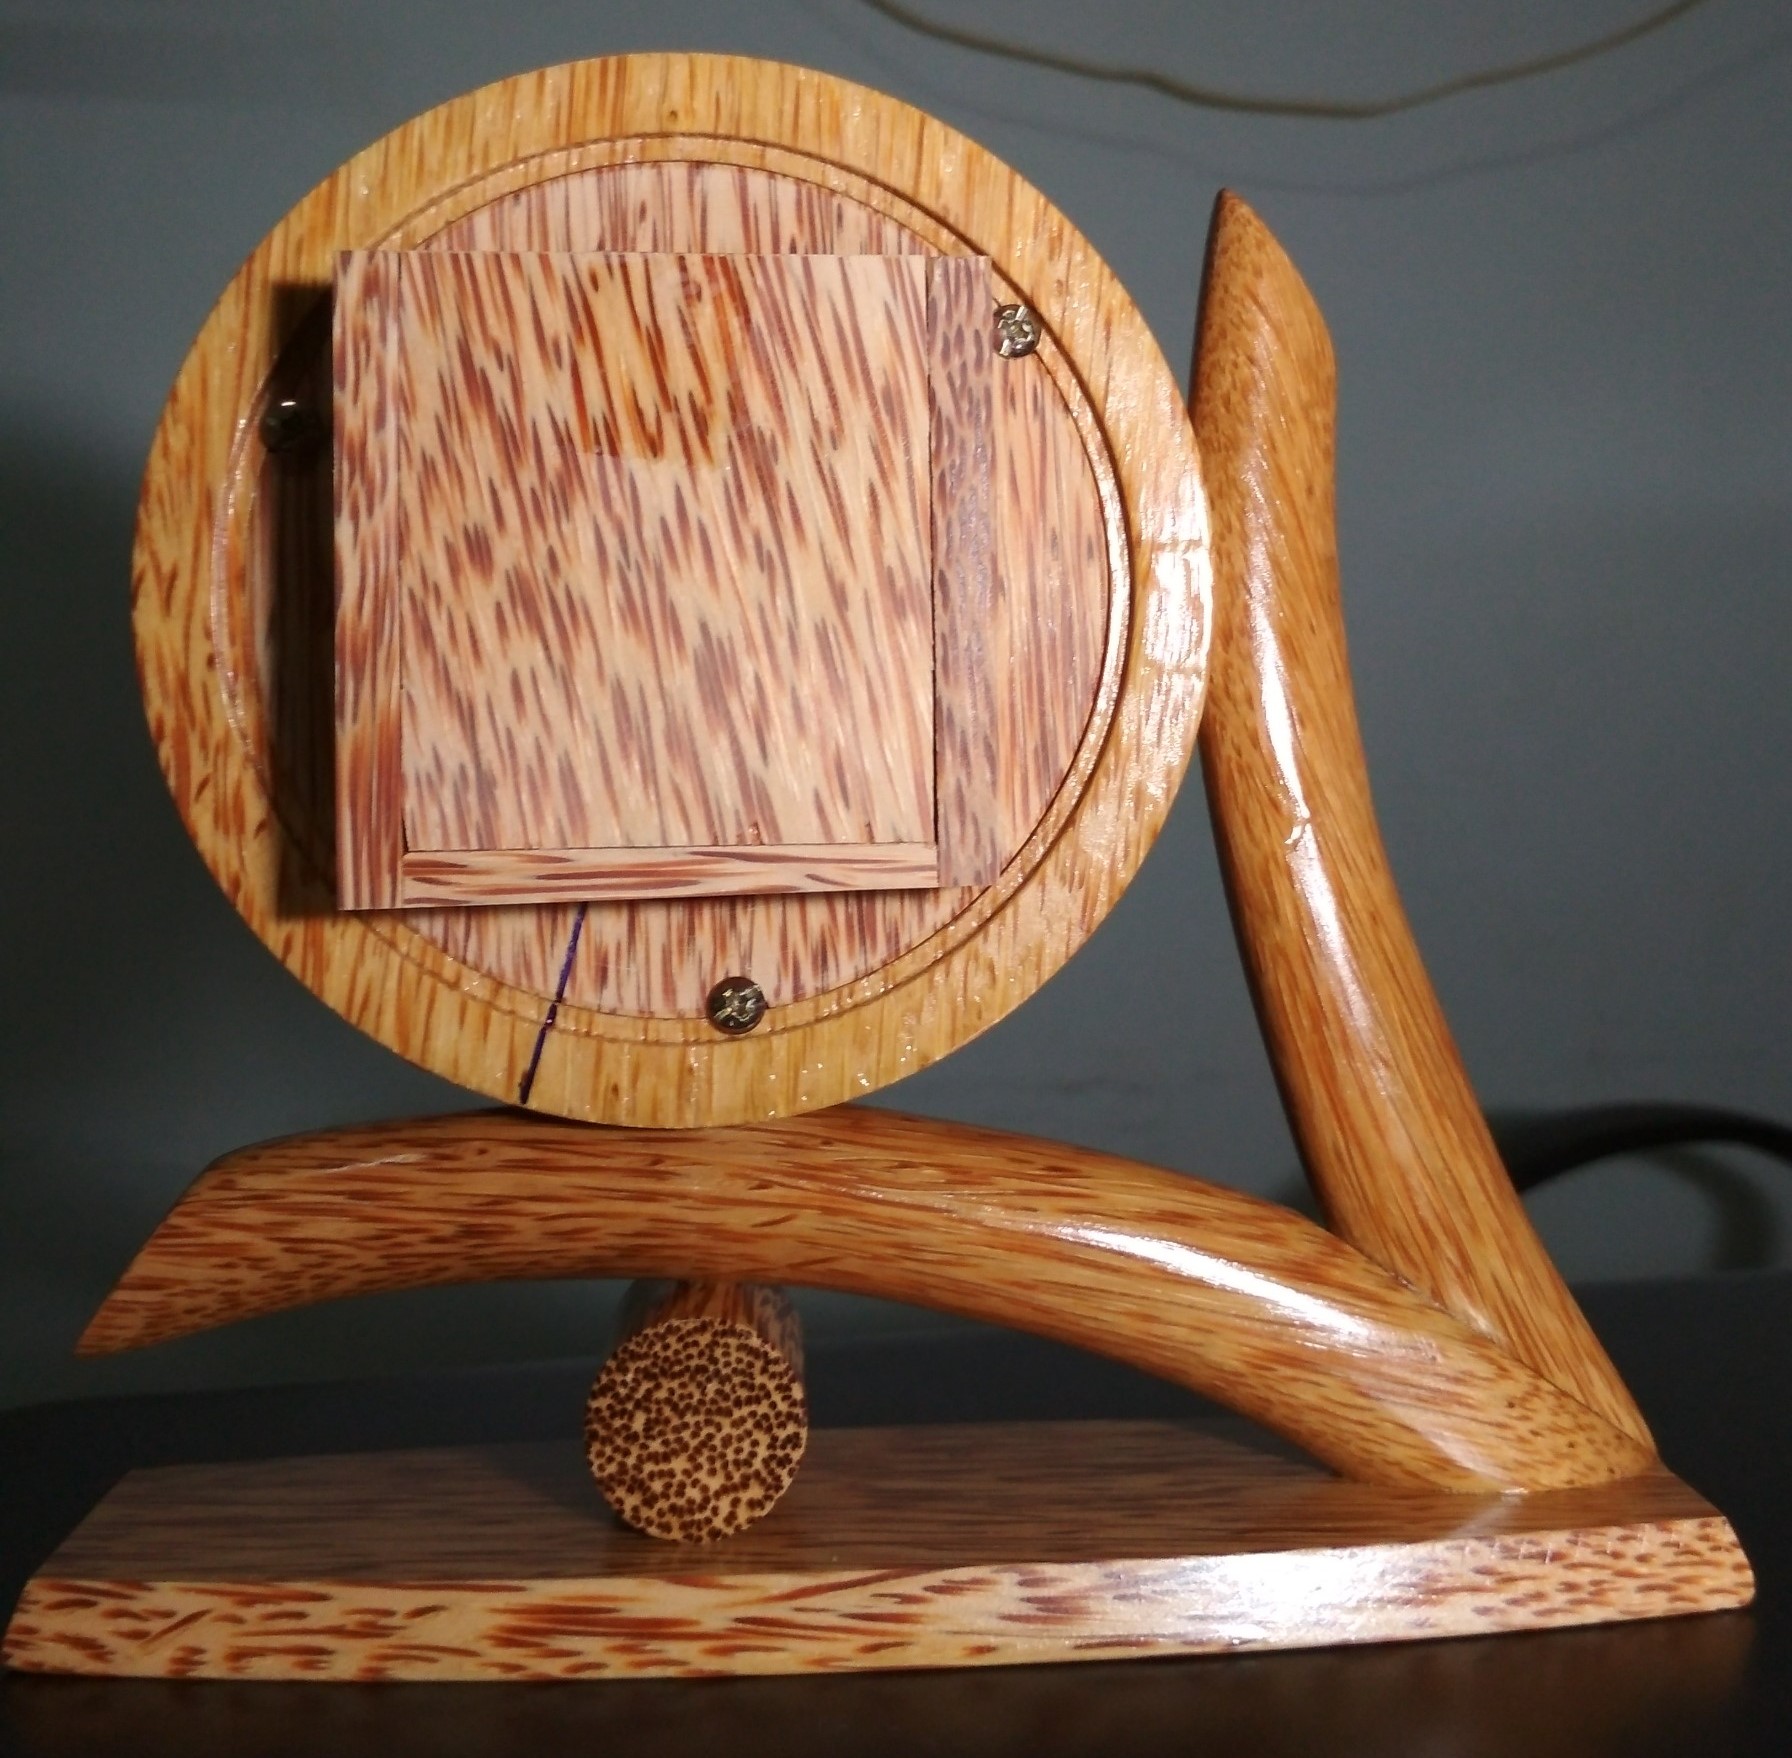 Đồng hồ chữ V gỗ dừa mỹ nghệ